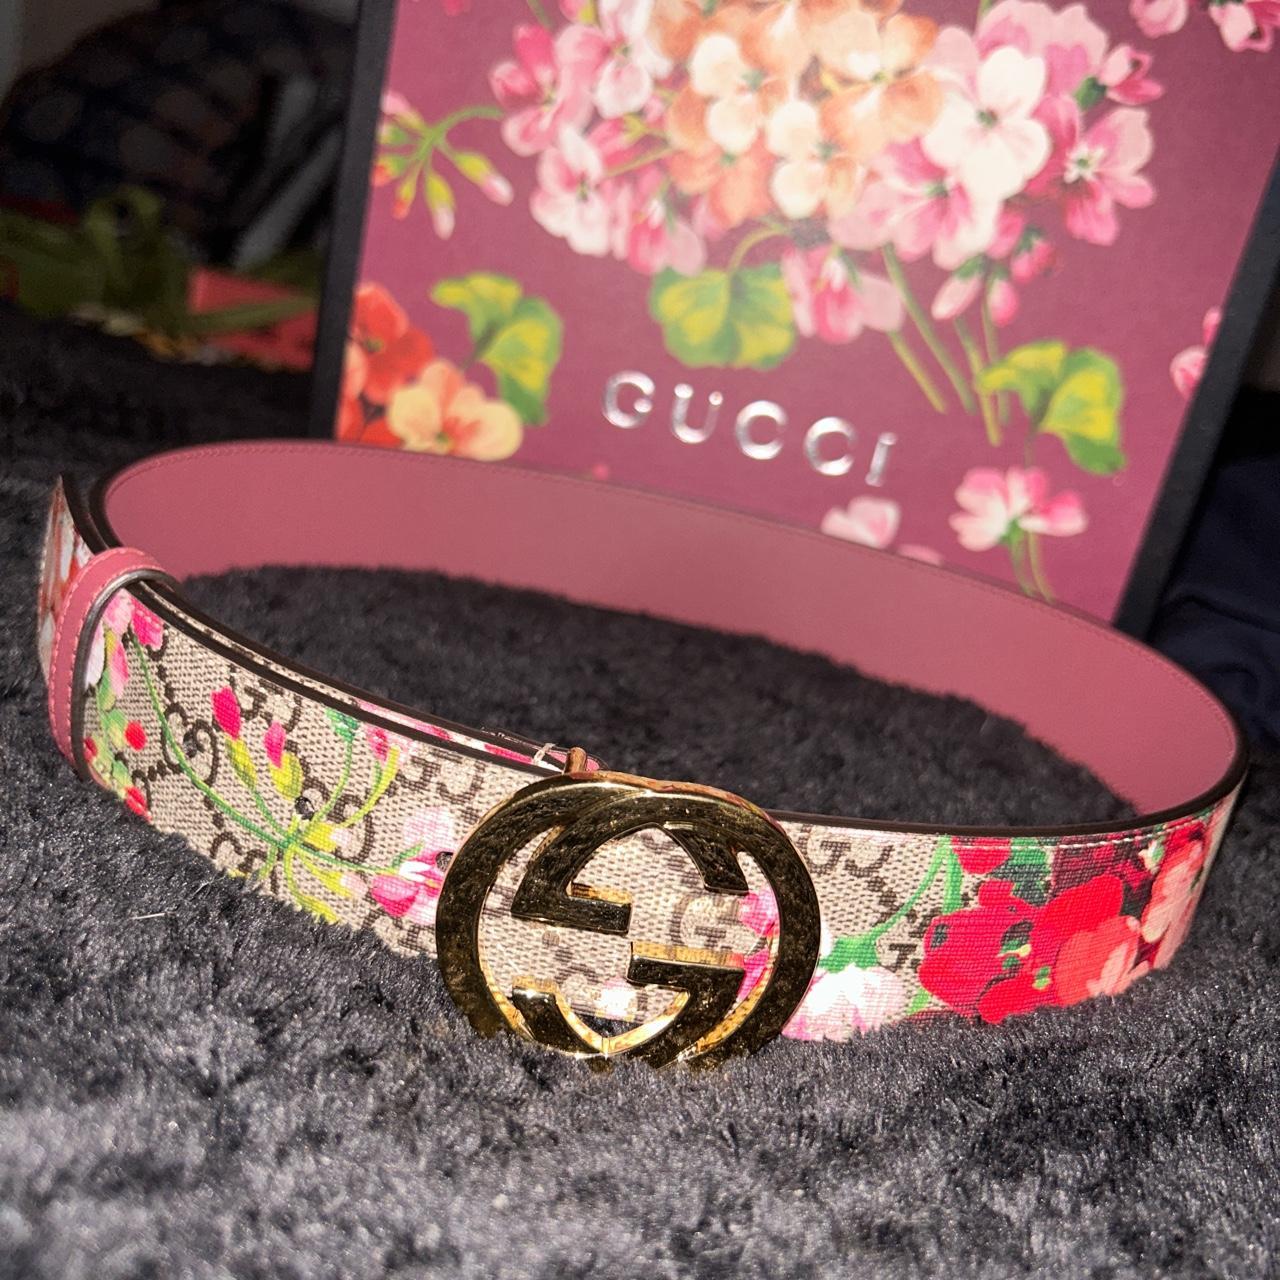 100% authentic Gucci bloom belt, size Gucci75.... - Depop